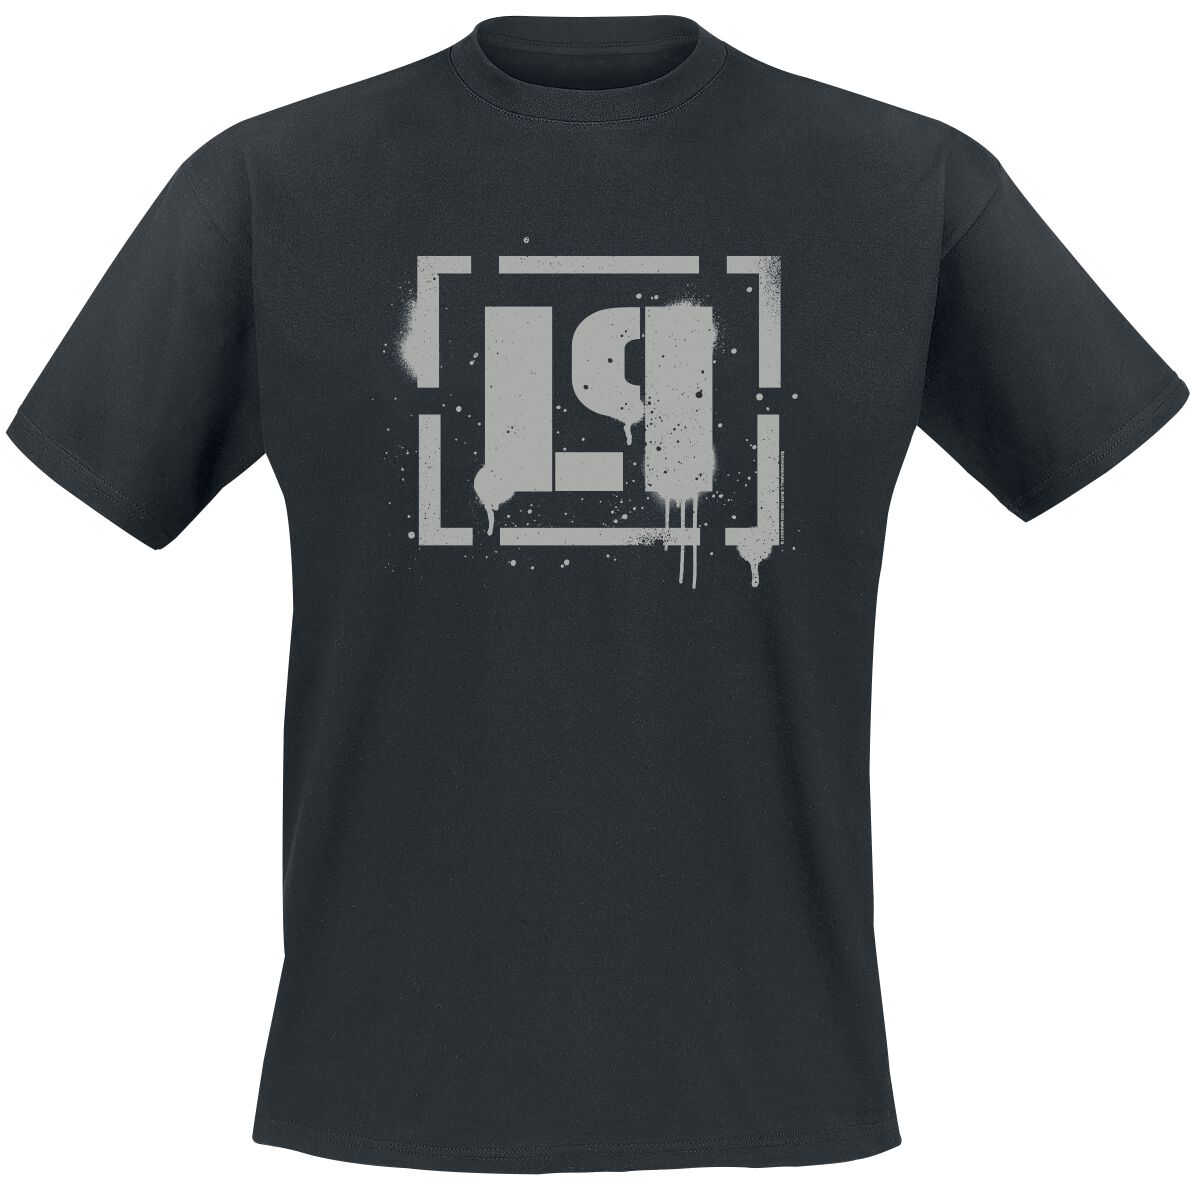 Linkin Park T-Shirt - Meteora Bracket Spray Logo - S bis 4XL - für Männer - Größe L - schwarz  - Lizenziertes Merchandise!